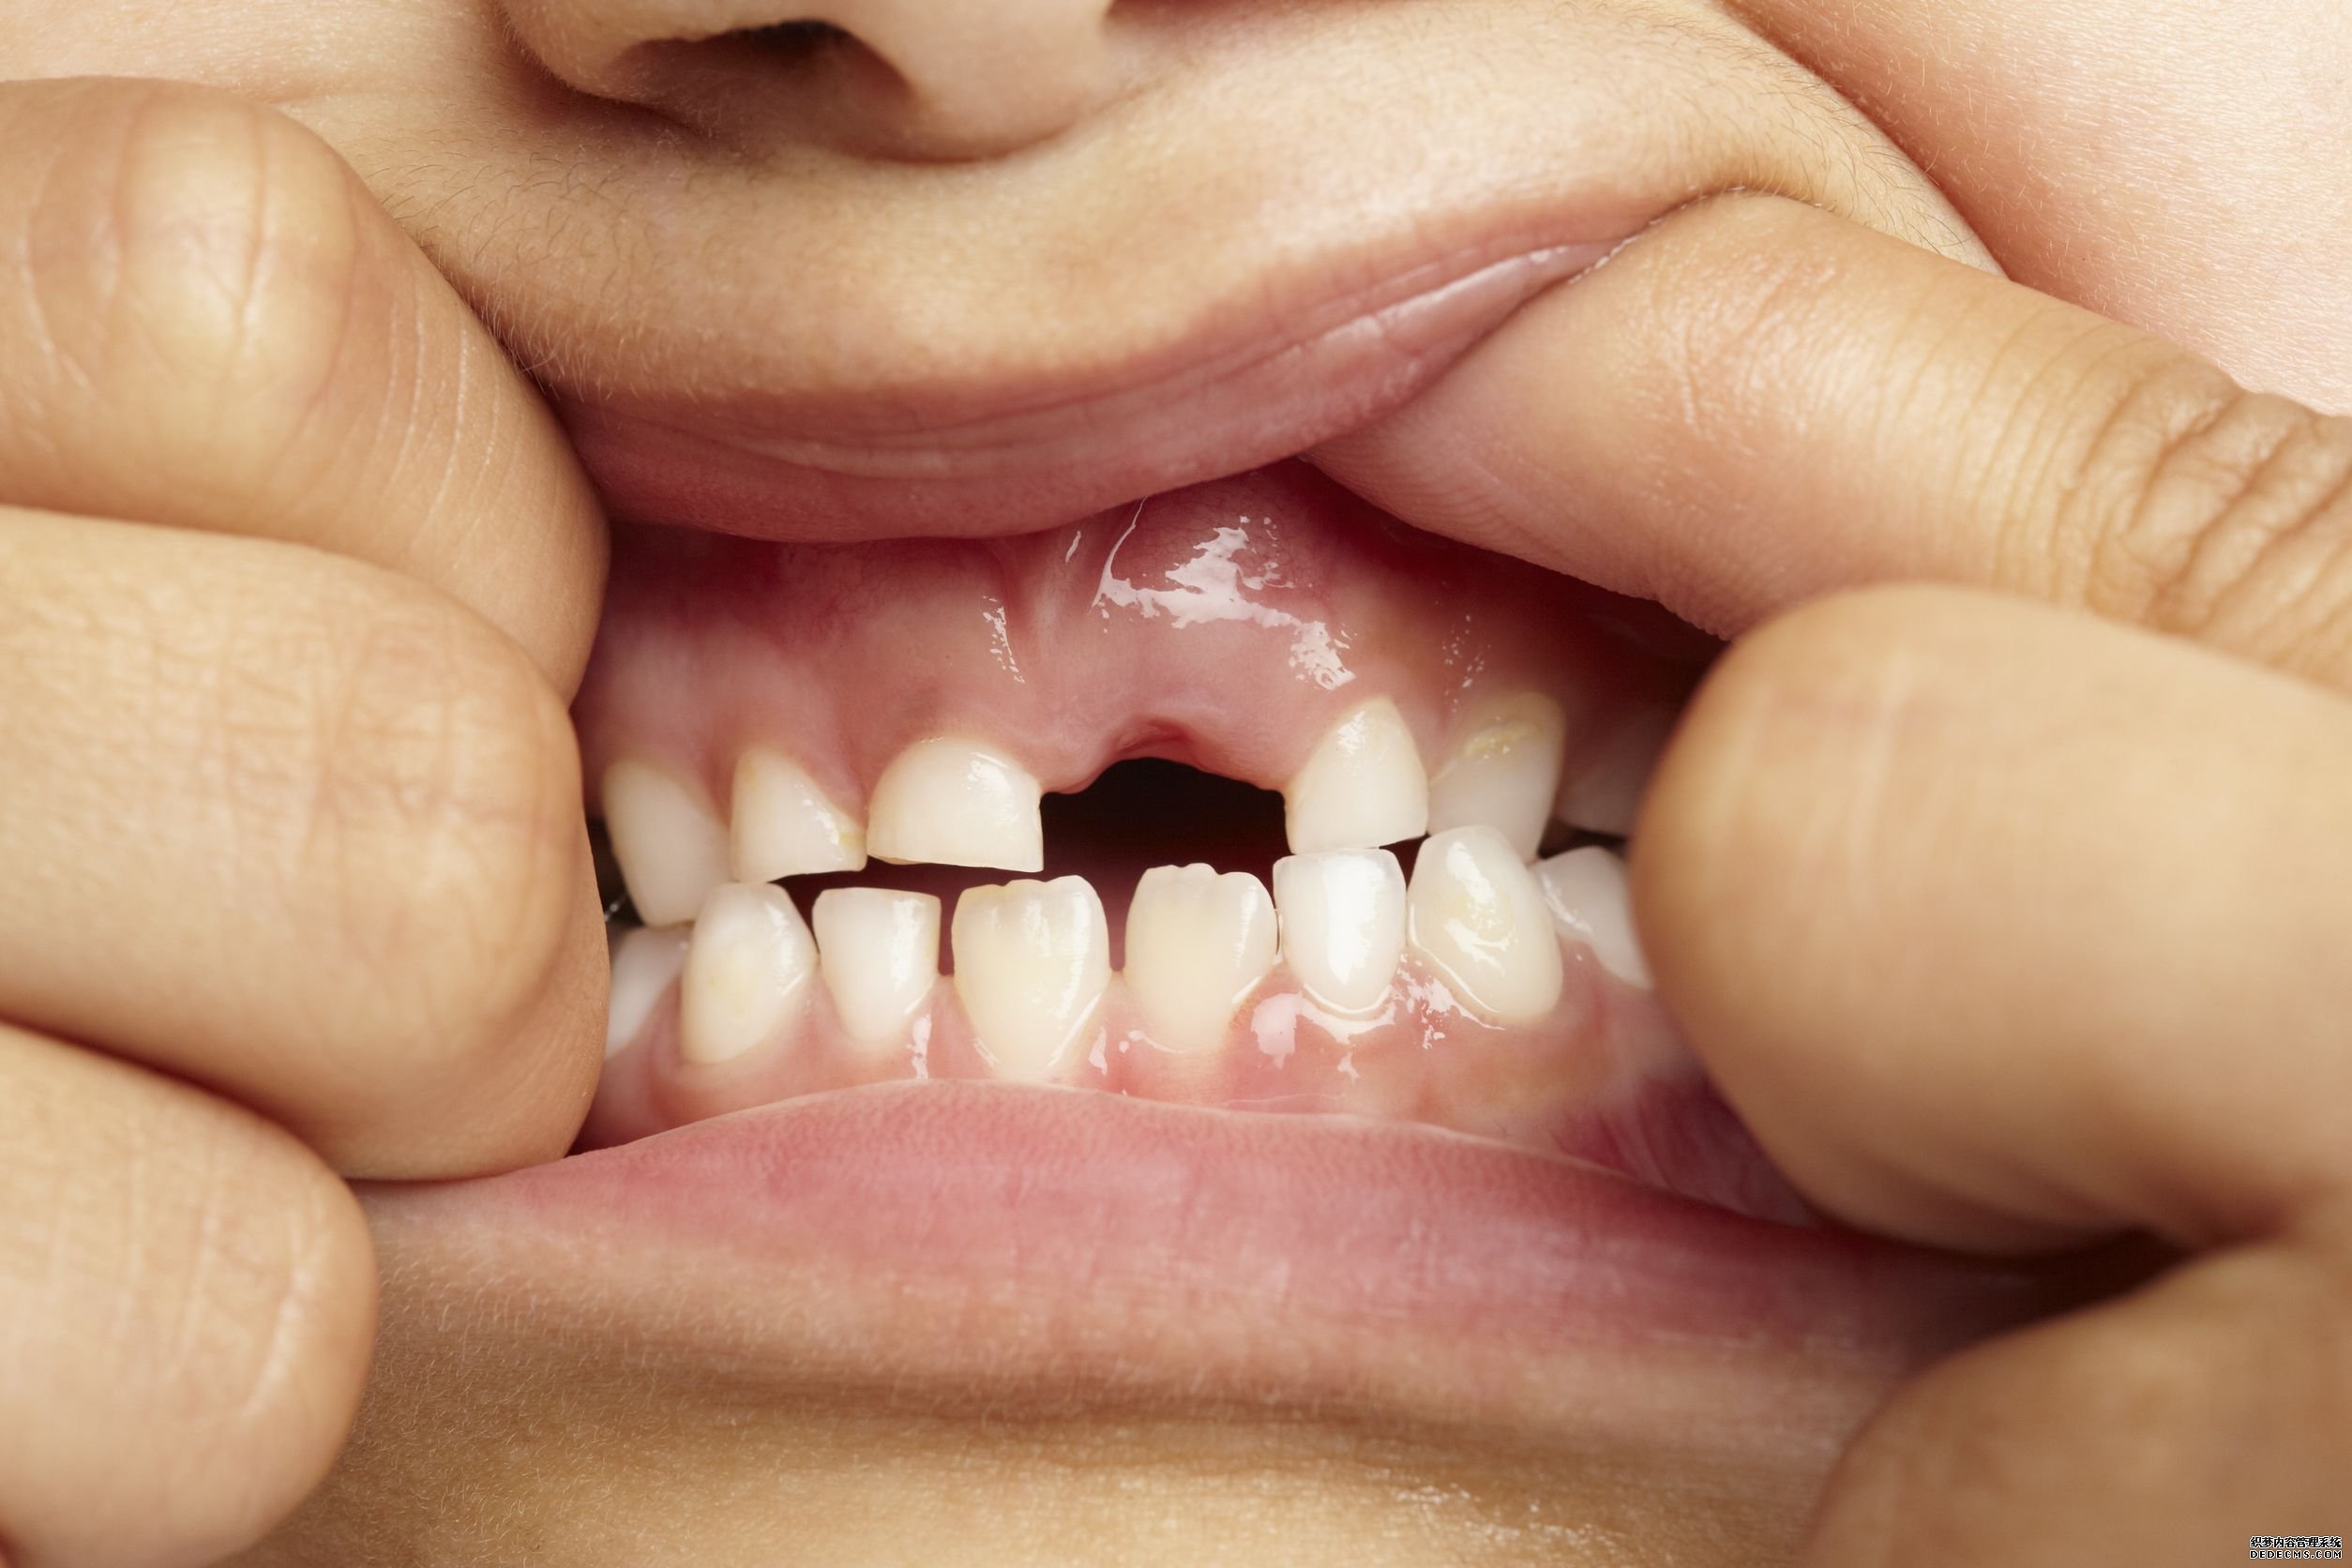 种植牙、镶牙、配假牙不是同一个科室的...